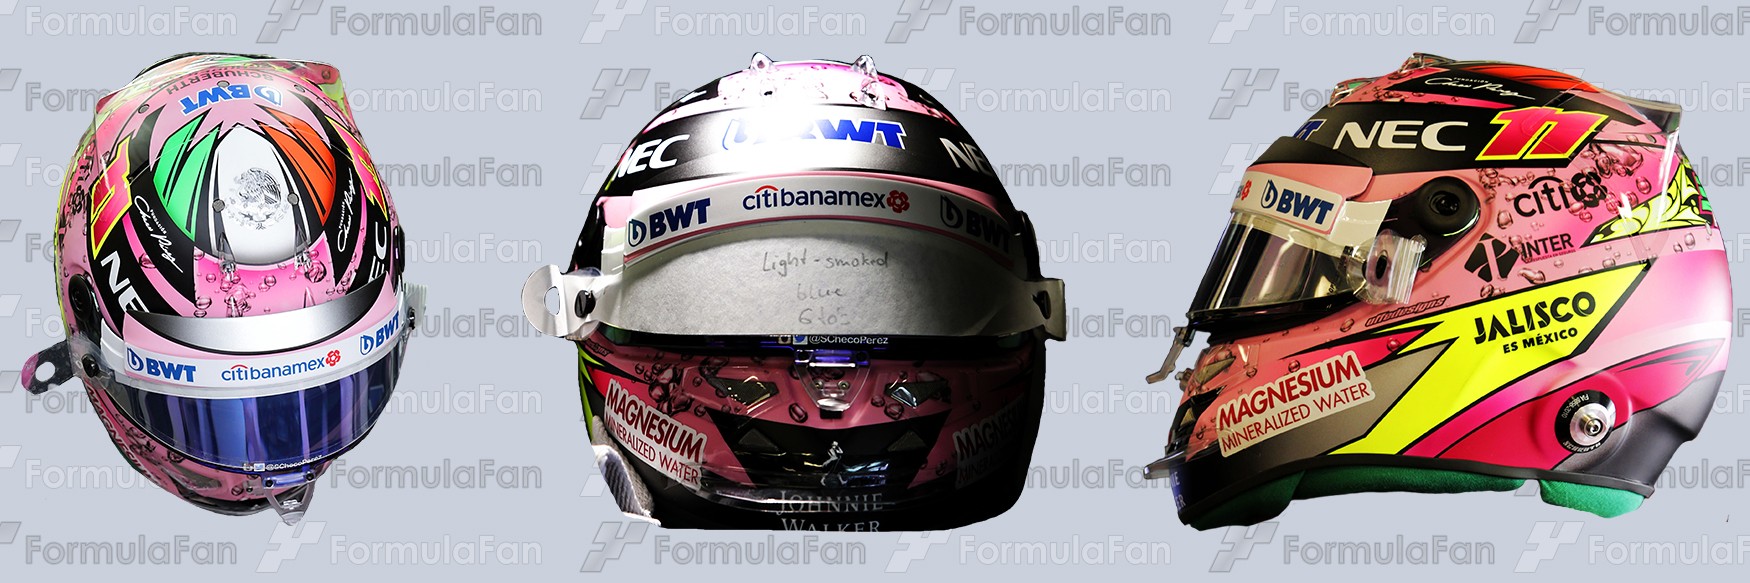 Шлем Серхио Переса на сезон 2017 года | 2017 helmet of Sergio Perez